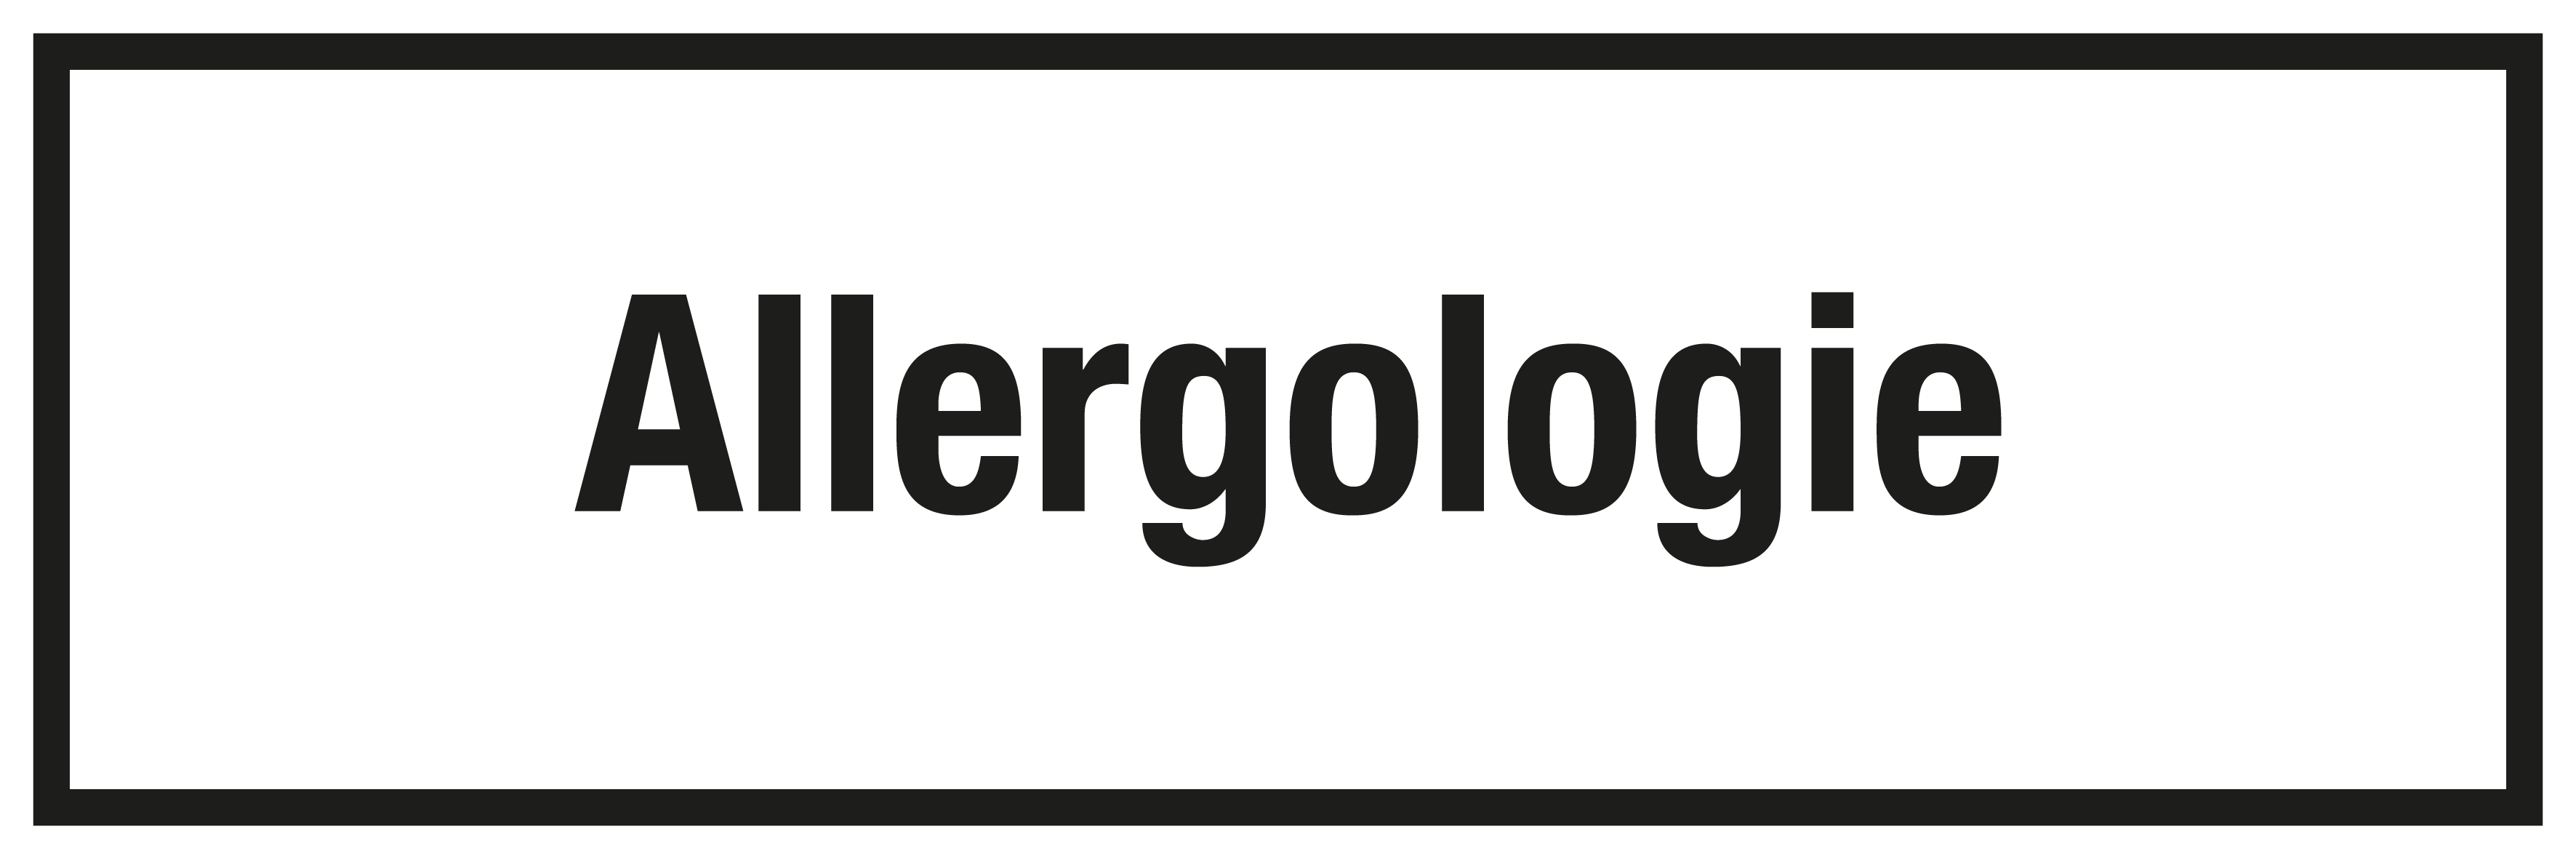 Krankenhaus- und Praxisschild - Allergologie - Folie Selbstklebend - 10 x 30 cm